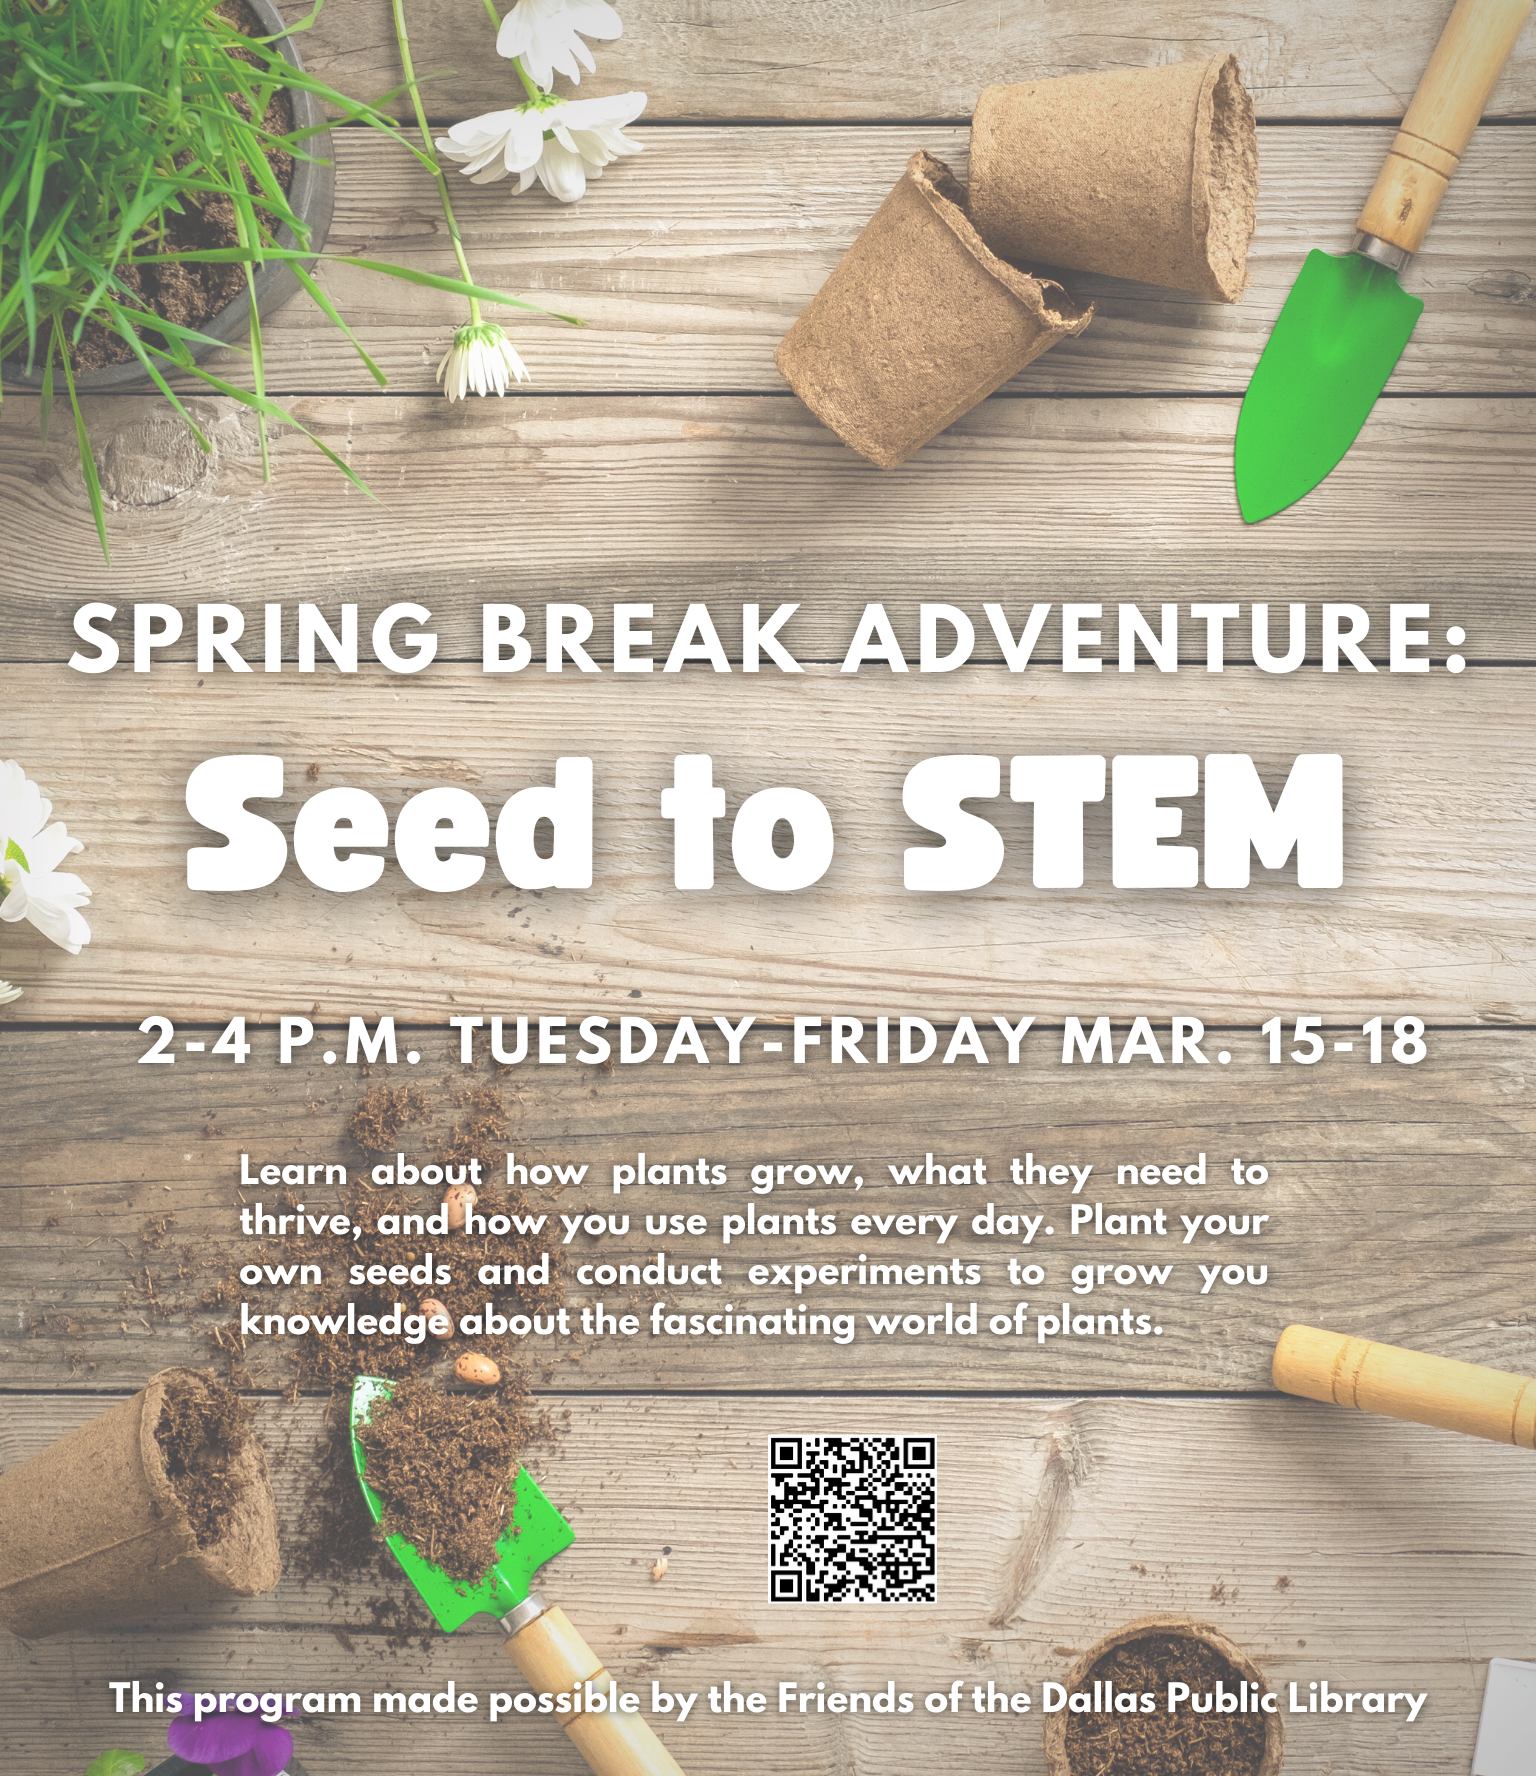 Spring Break Adventure: Seed to STEM